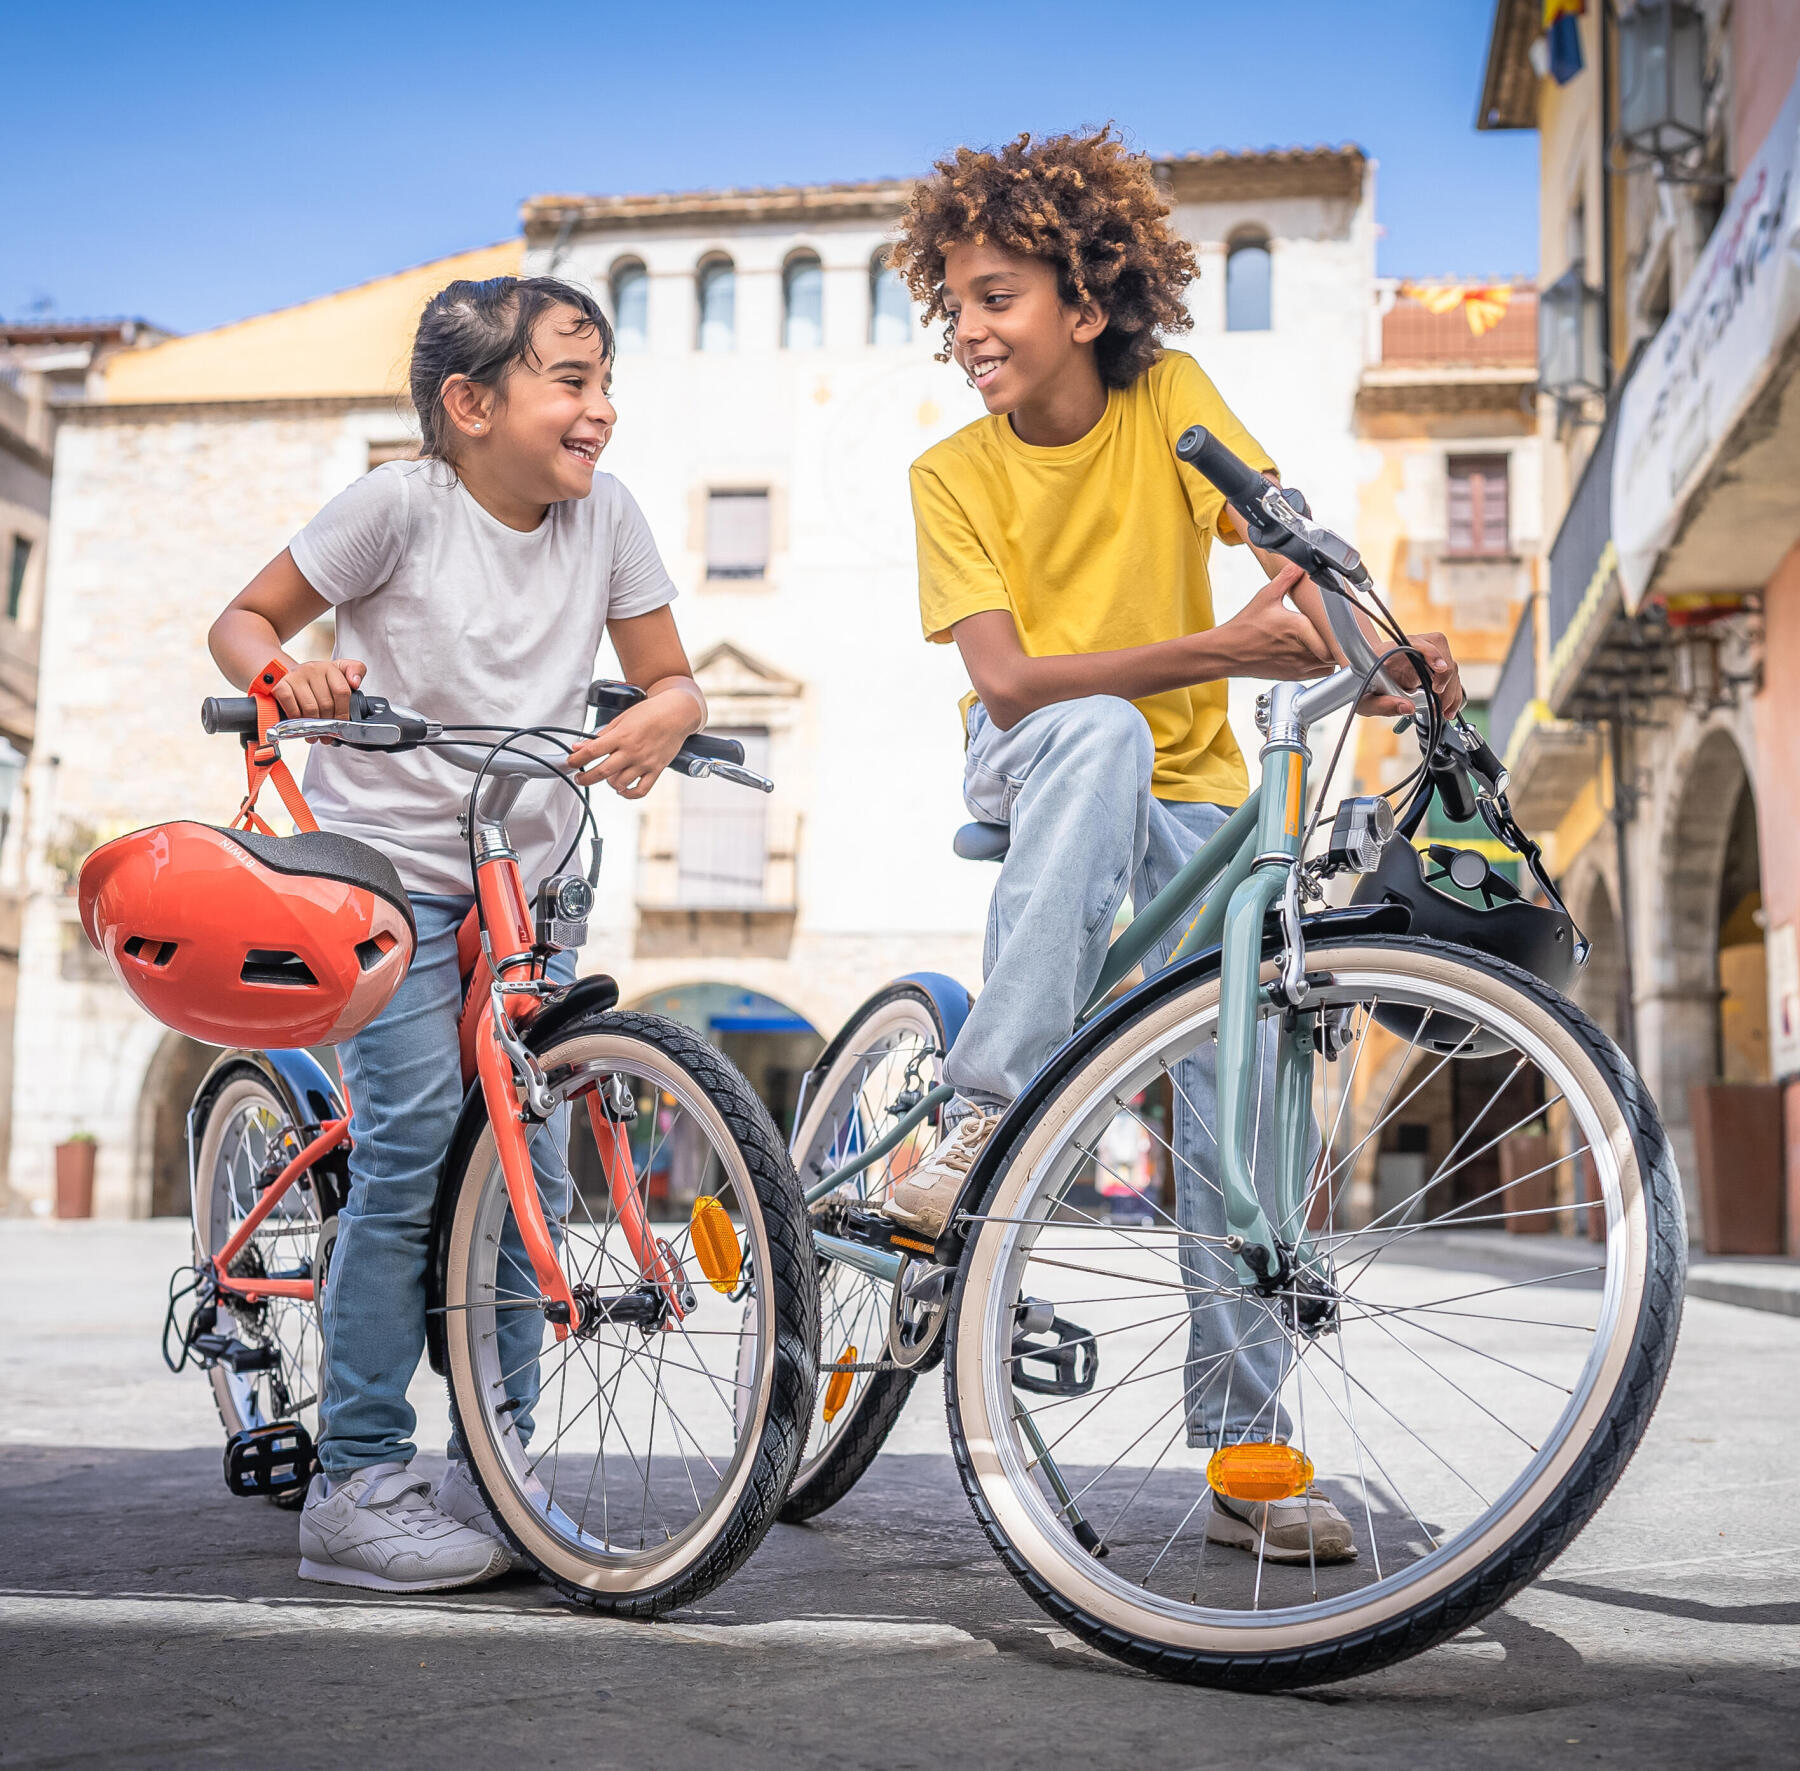 En pojke och en flicka står över sina cyklar och skrattar på ett torg.